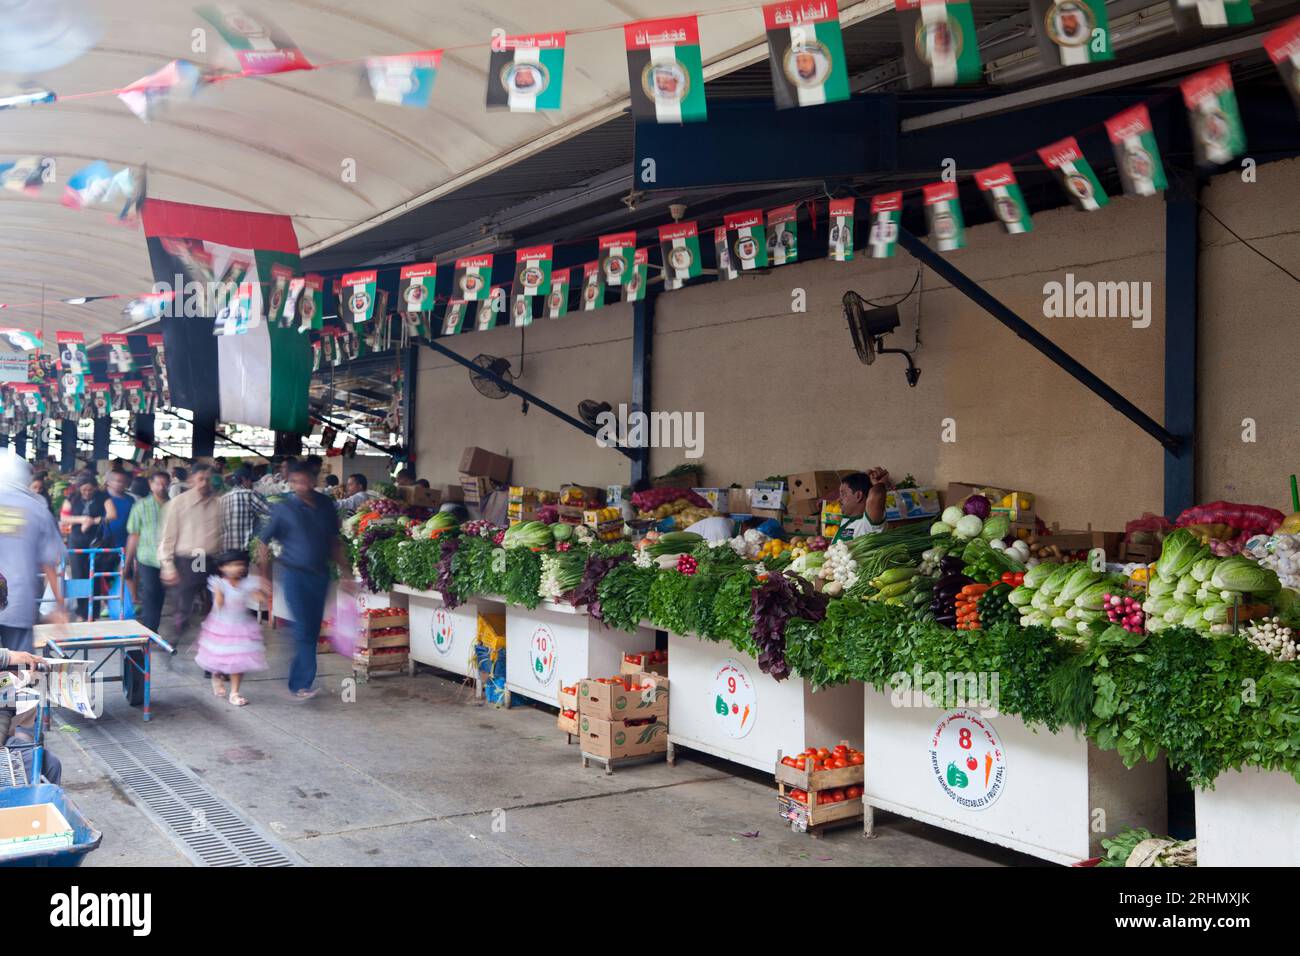 Vereinigte Arabische Emirate, Abu Dhabi, Gemüsemarkt am Diera Fish/Meat & veg Market. Stockfoto